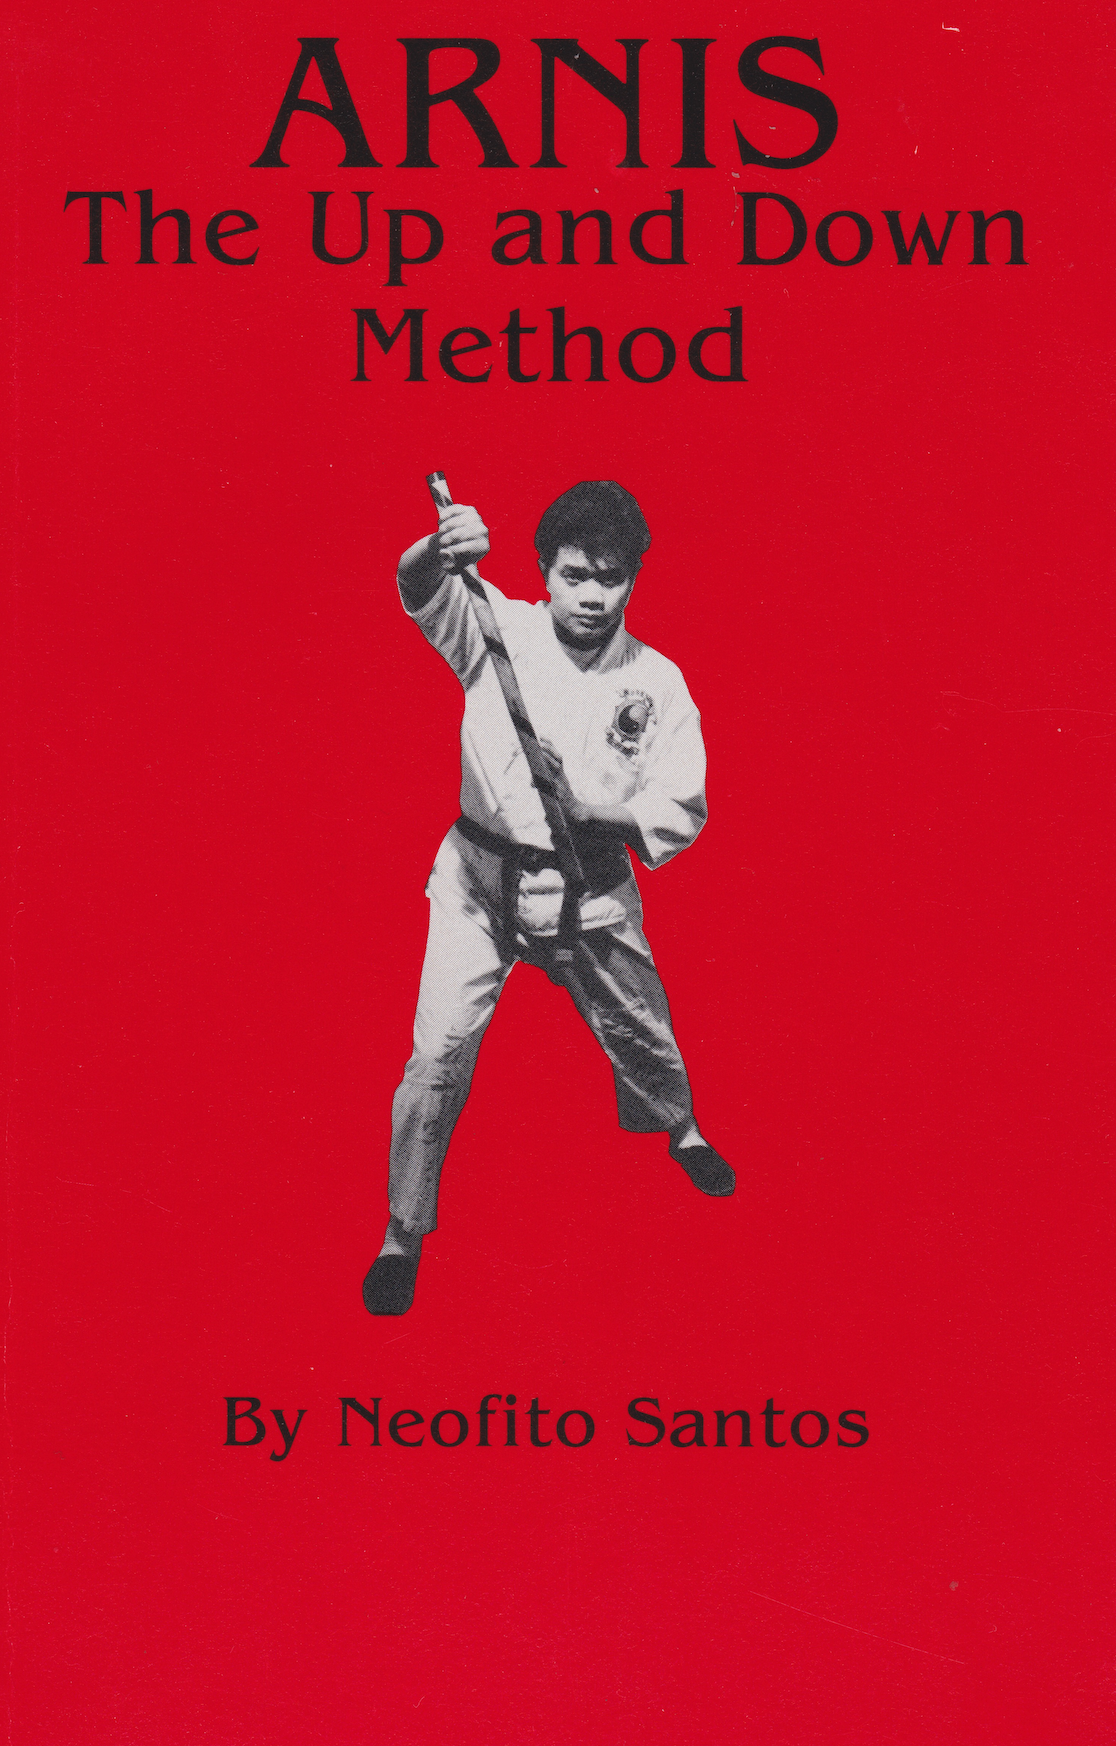 Arnis El Método Arriba y Abajo Libro de Neofito Santos